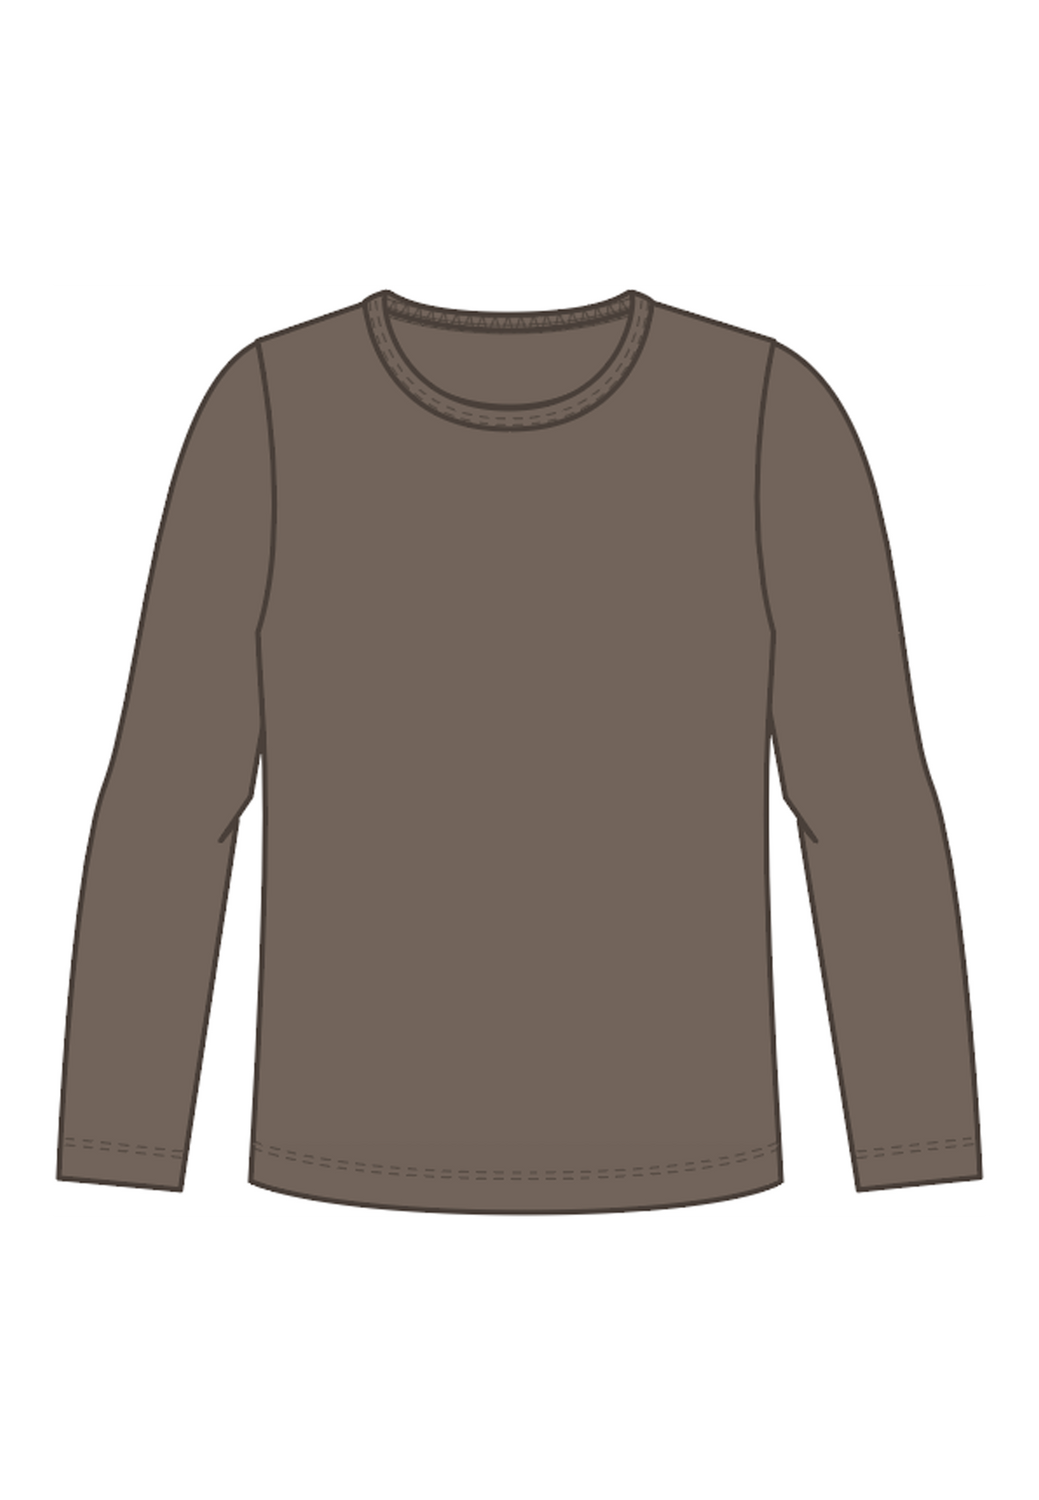 NKFBUANNA T-Shirts & Tops - Walnut